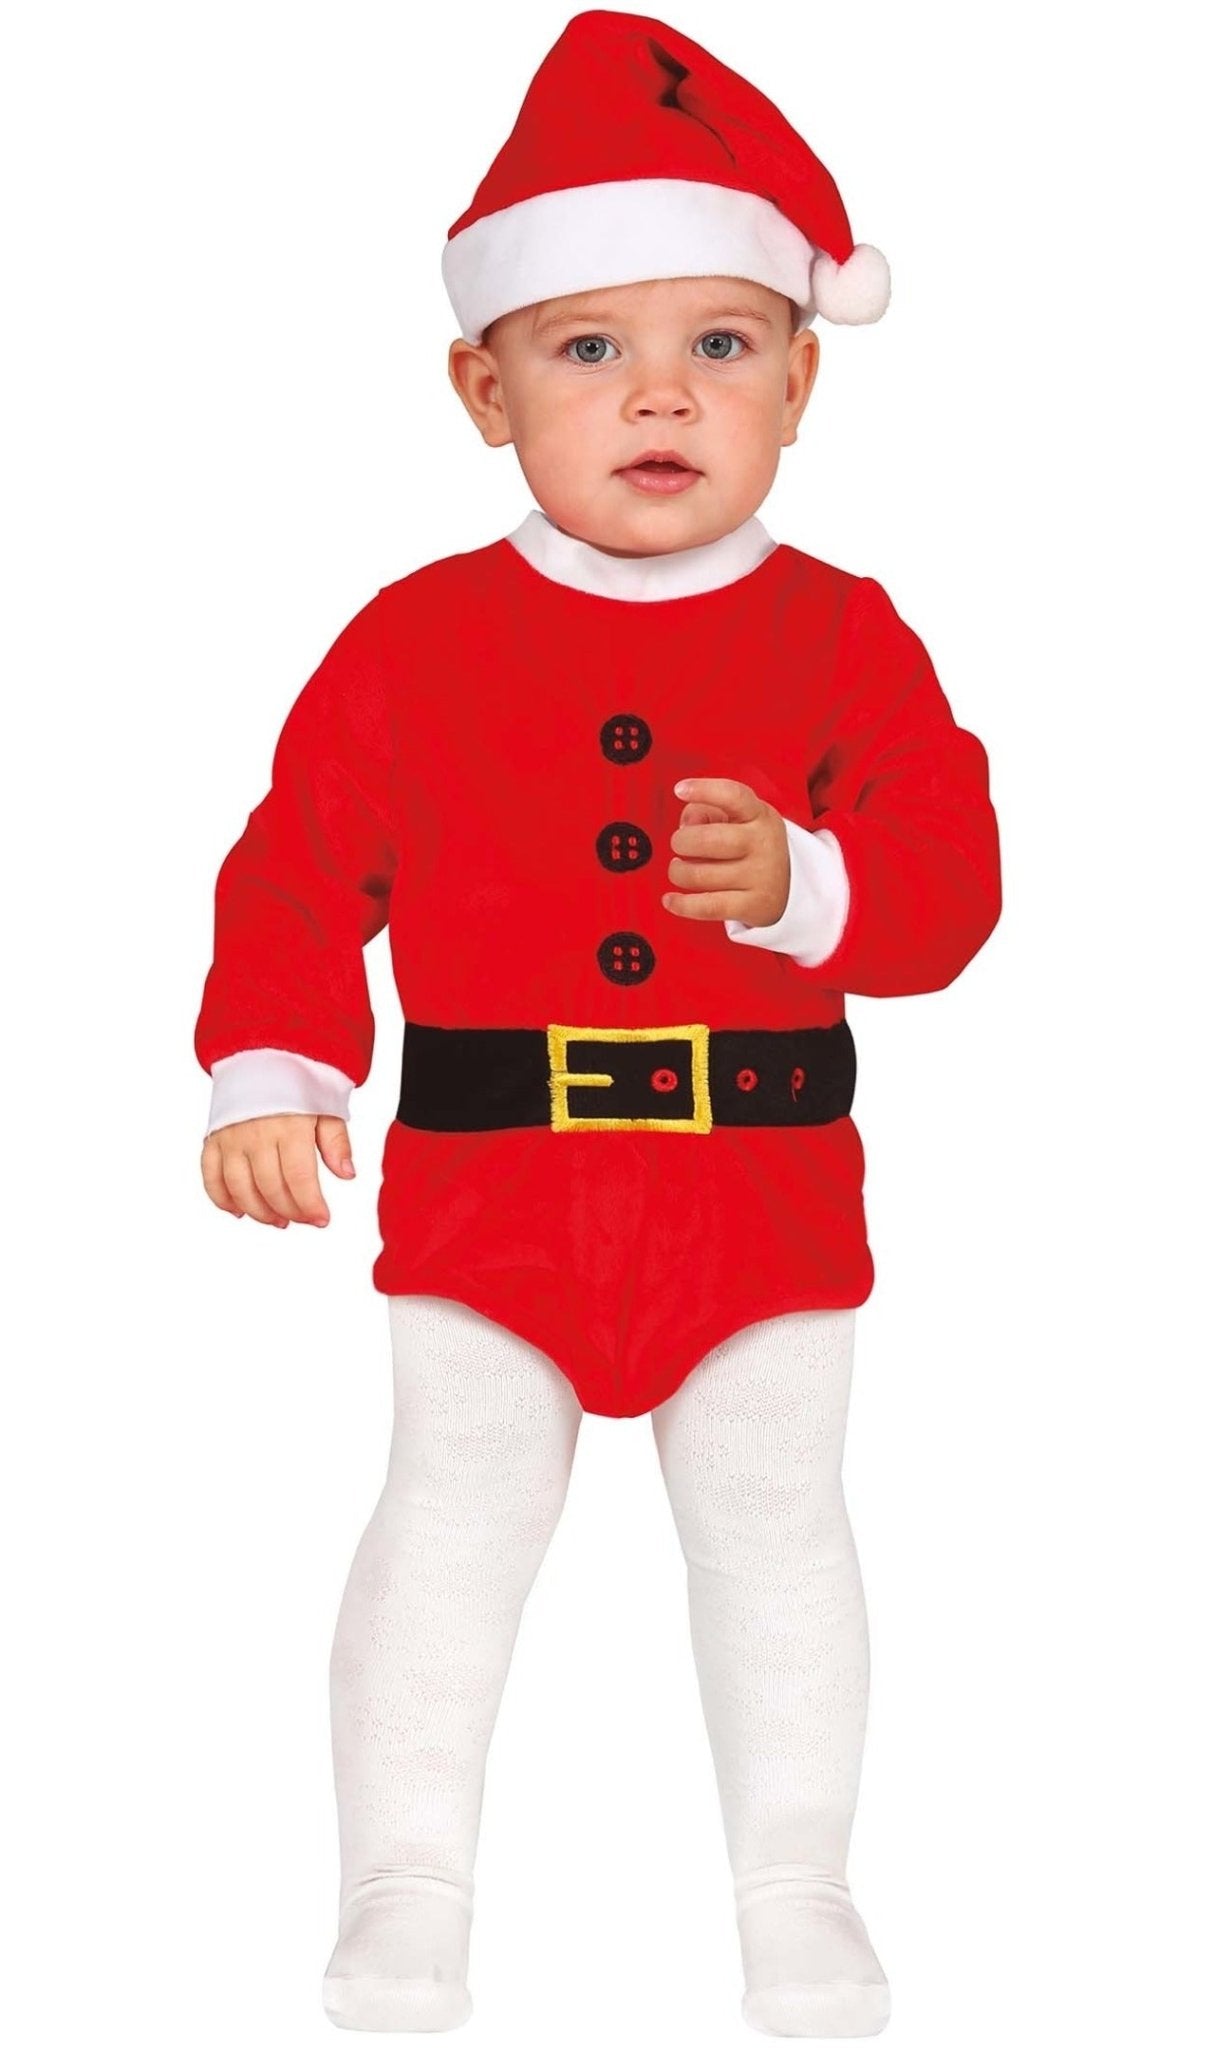 Comprar online Disfraz de Papá Noel Body para beb